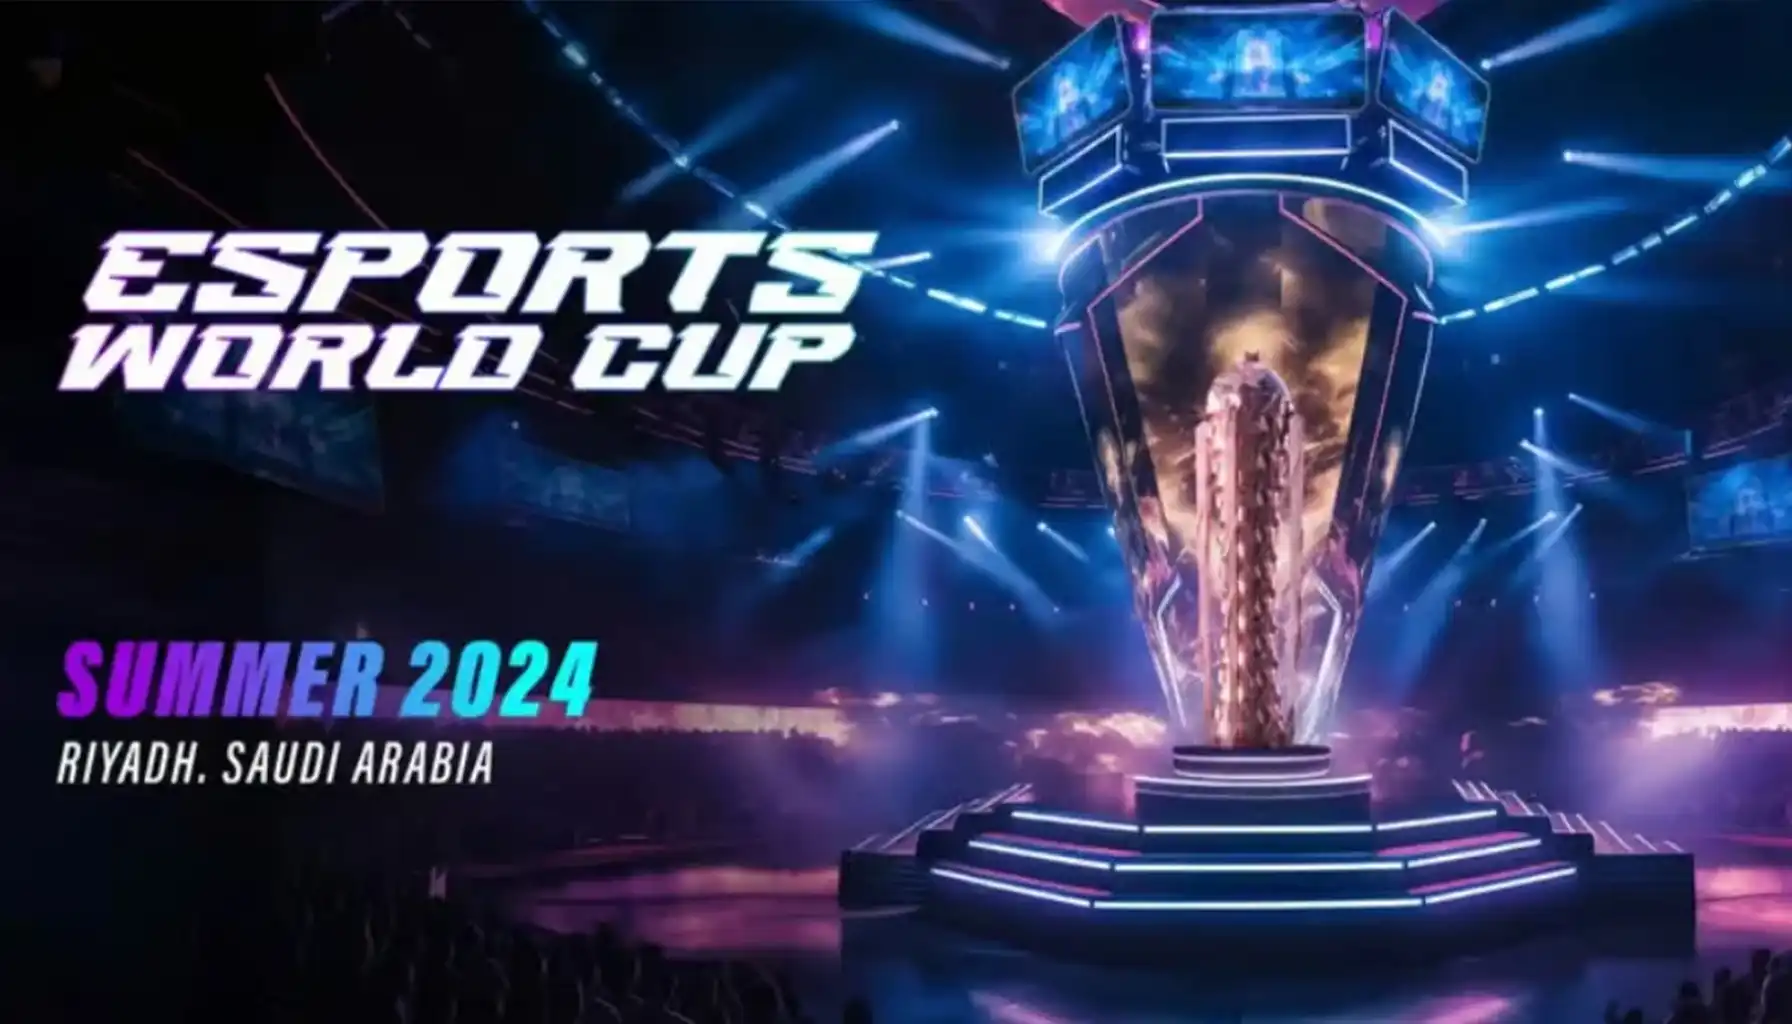 Piala Dunia Esports 2024 di Arab Saudi, menampilkan turnamen top dengan hadiah besar. Ikuti detail acara, jadwal, dan lebih lanjut.